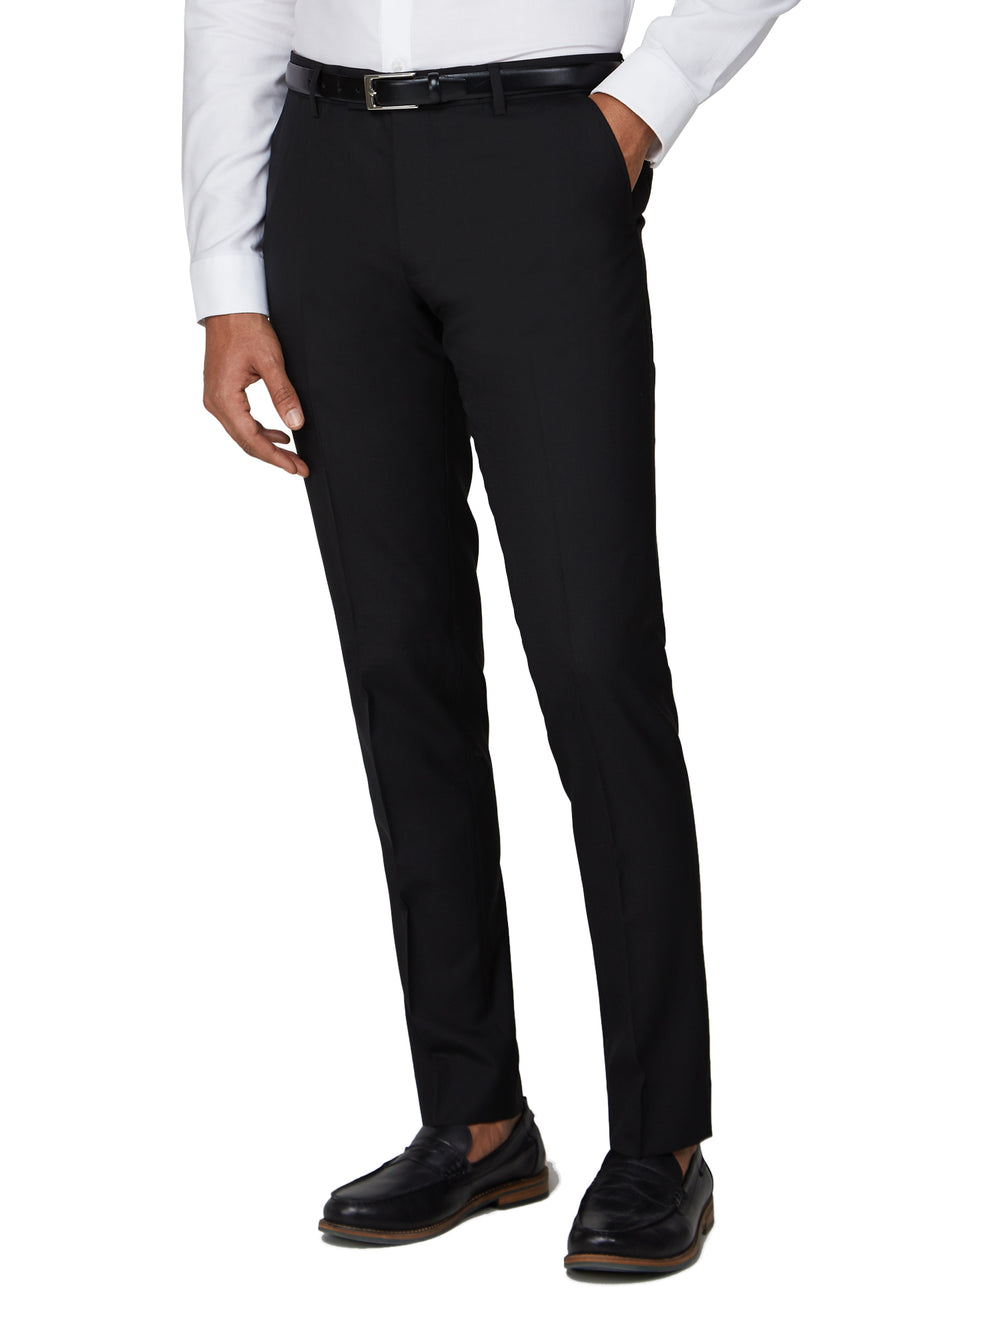 Tonic Camden Fit Suit Trouser - Black